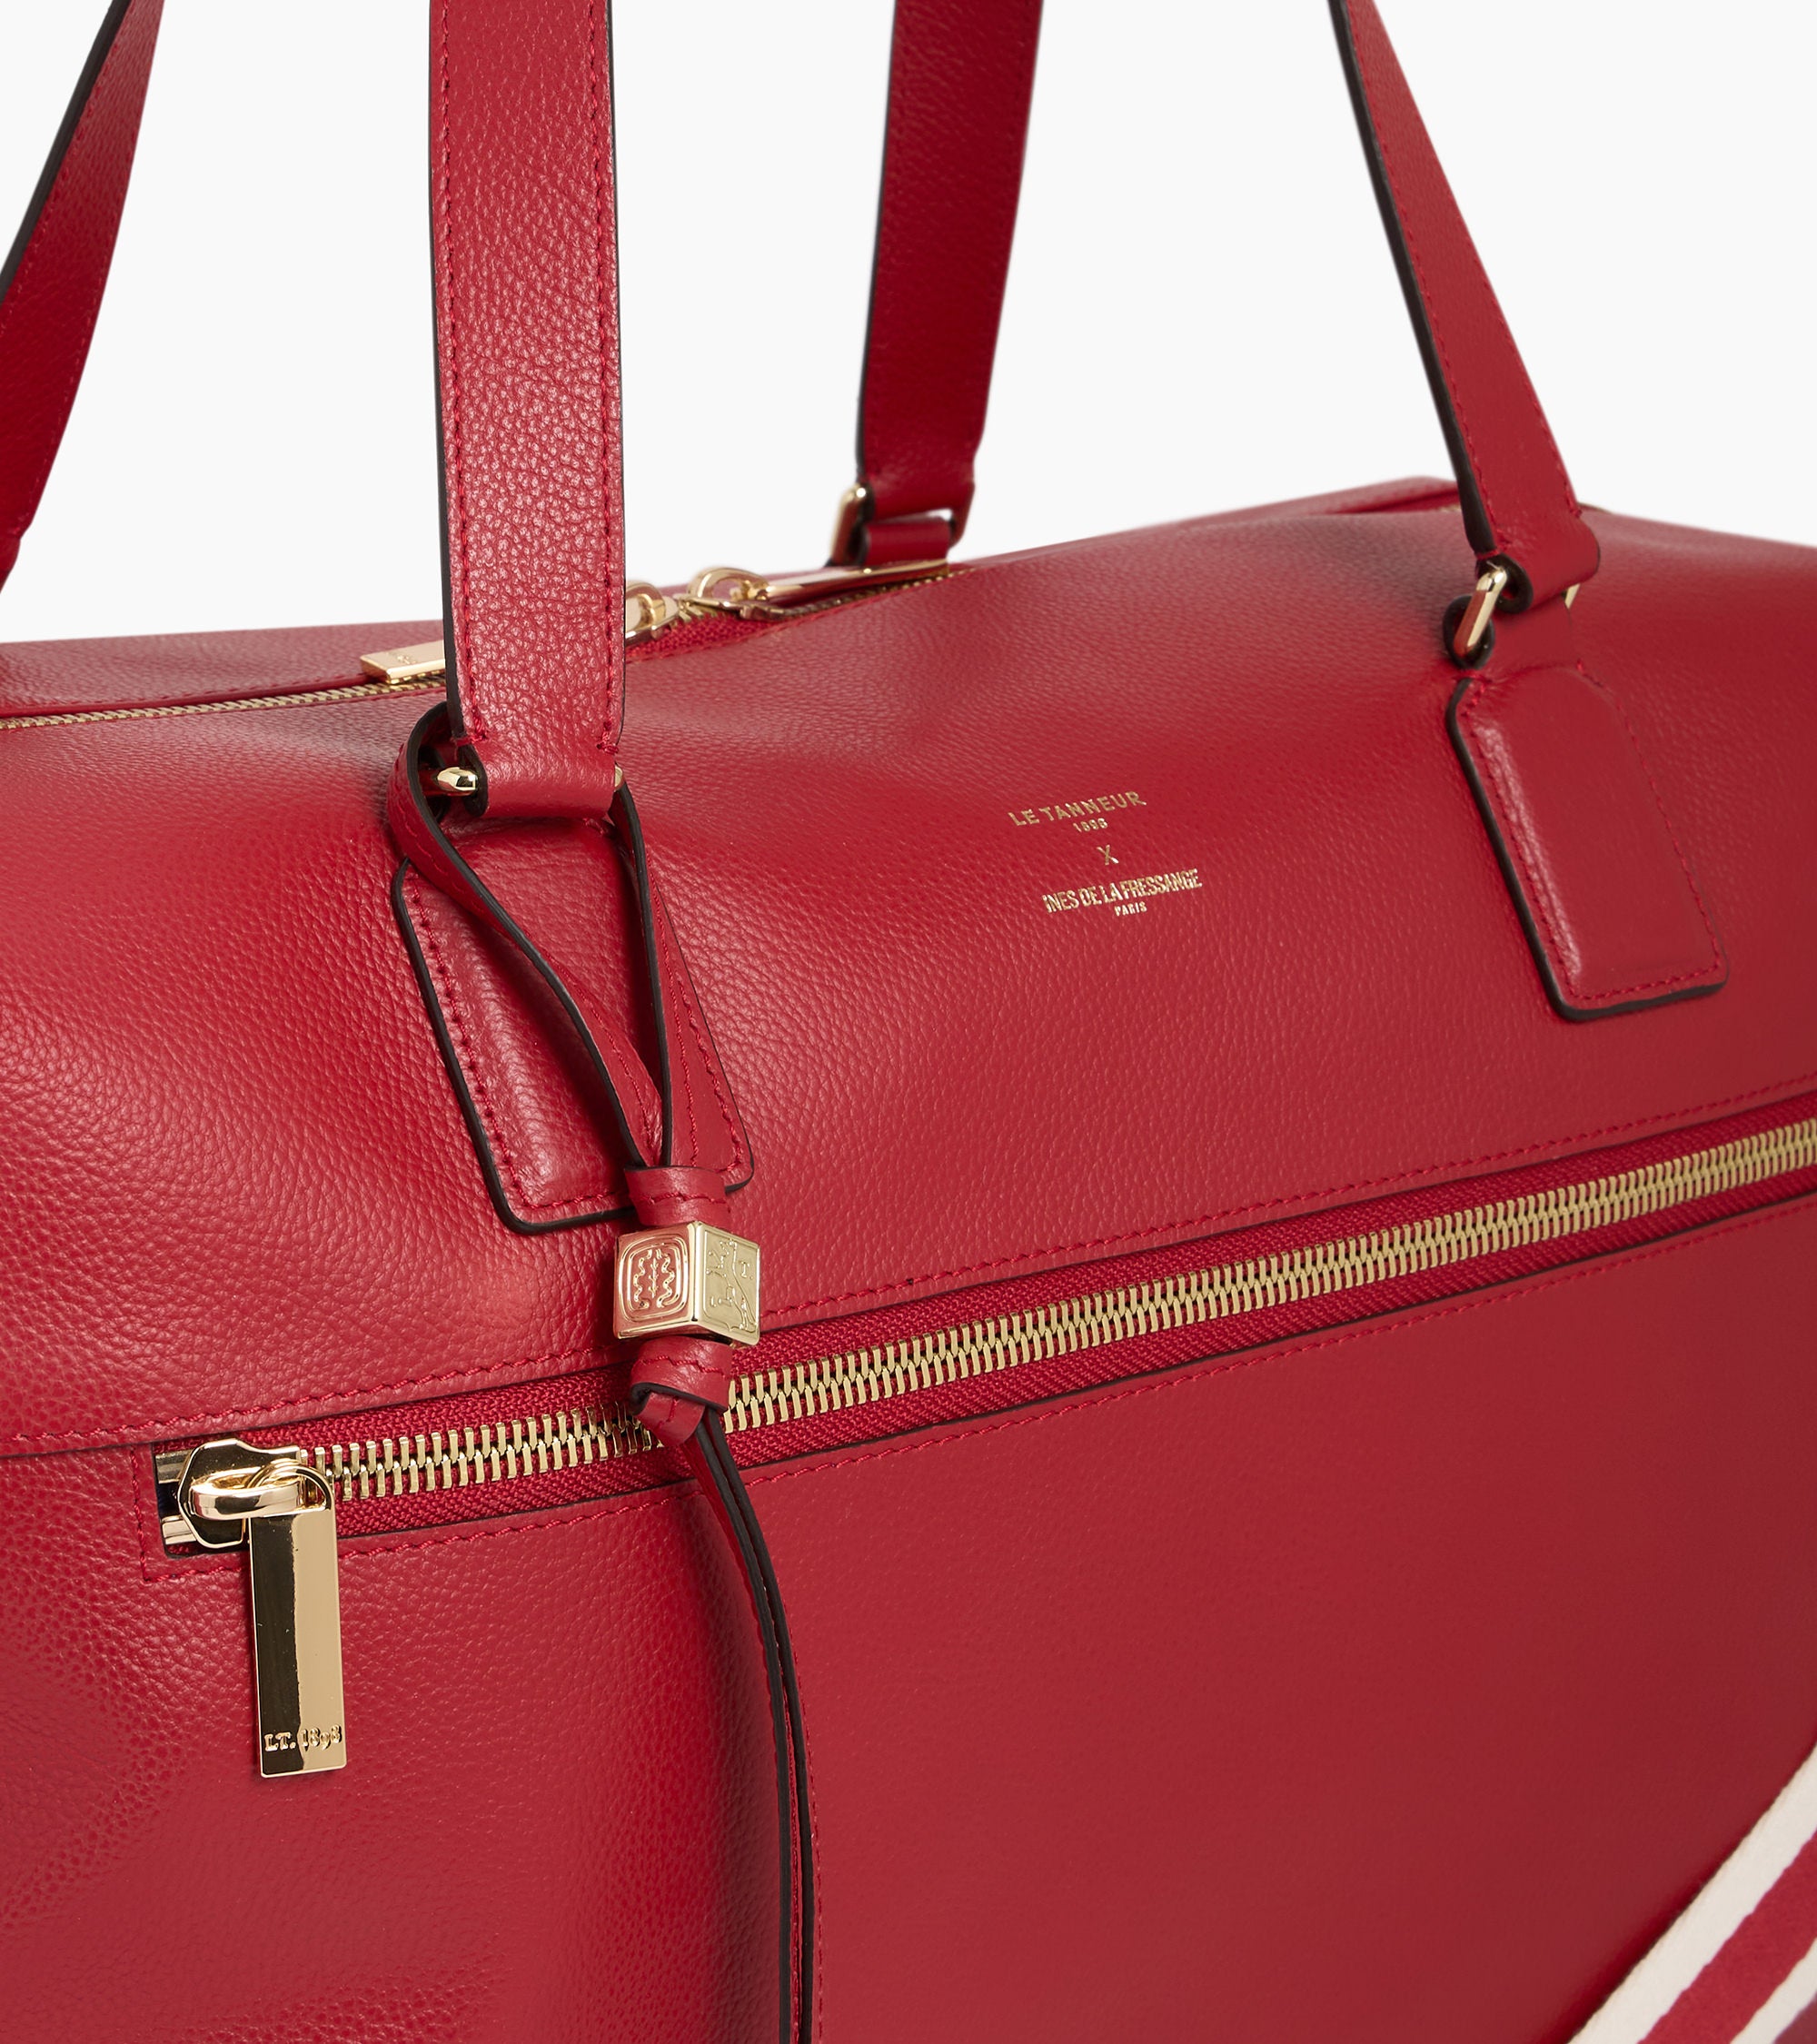 Inès de la Fressange 24-hour travel bag in grained leather